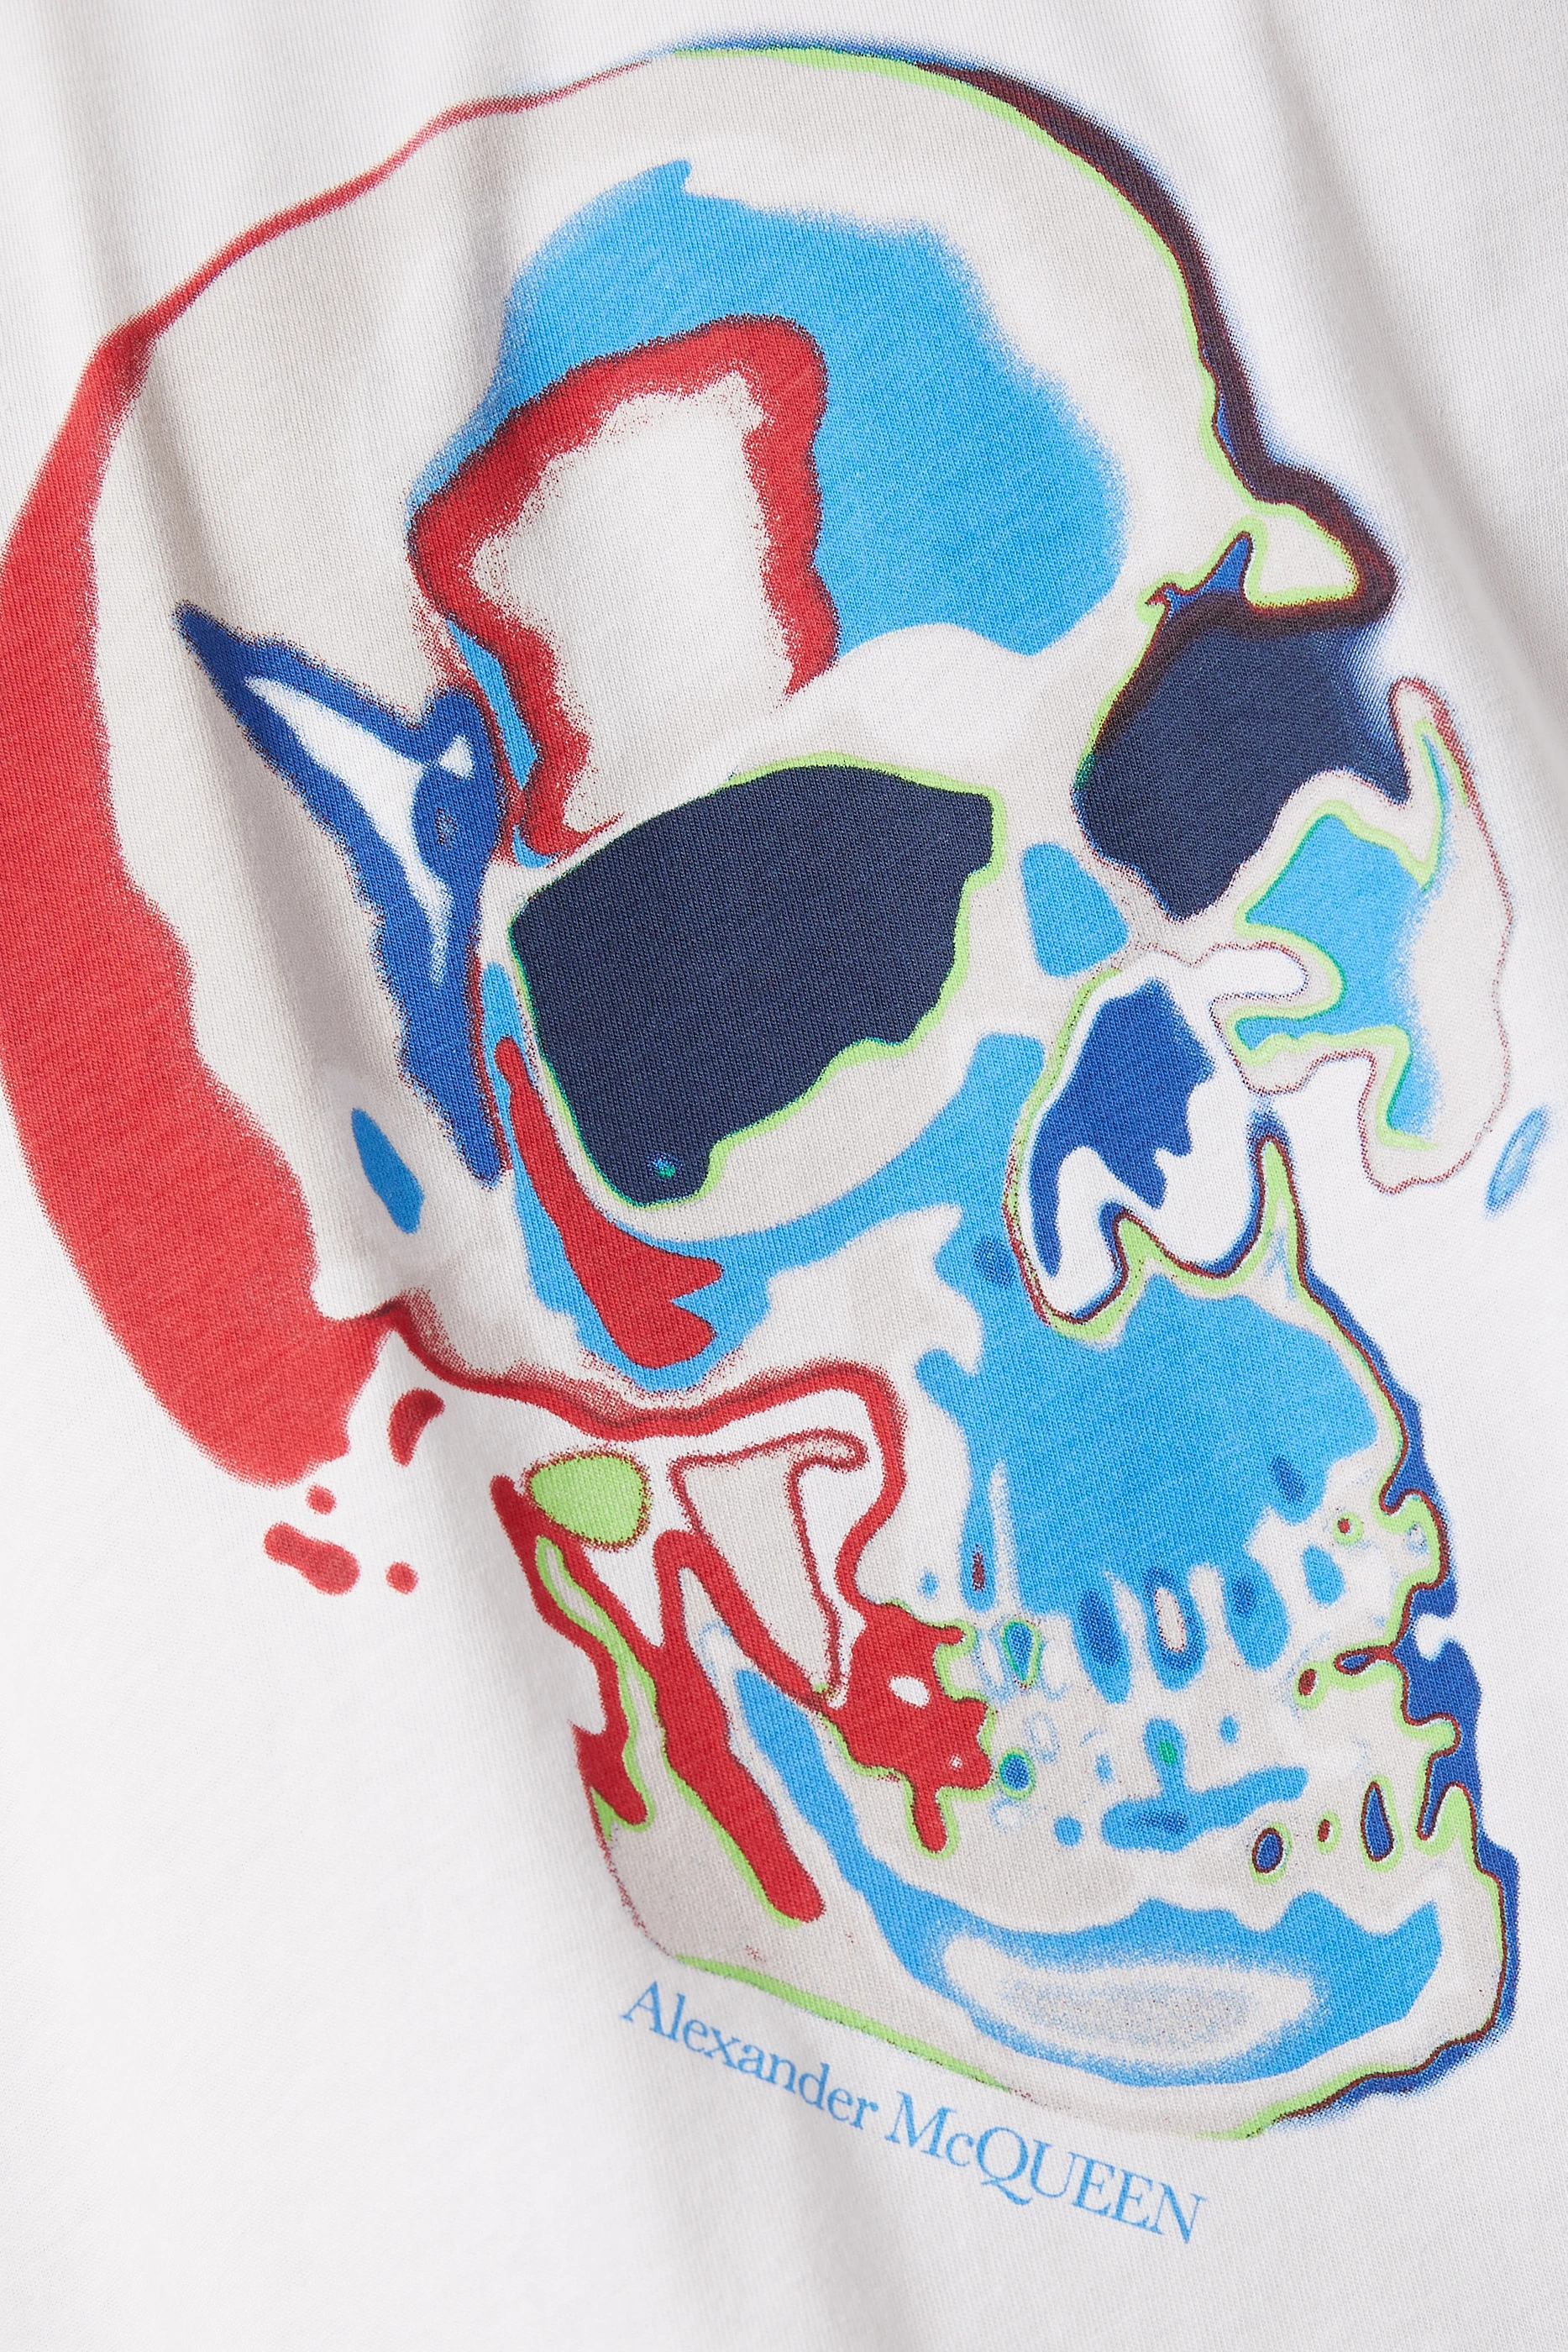 Alexander McQueen Skull design  Skull tshirt, Skull painting